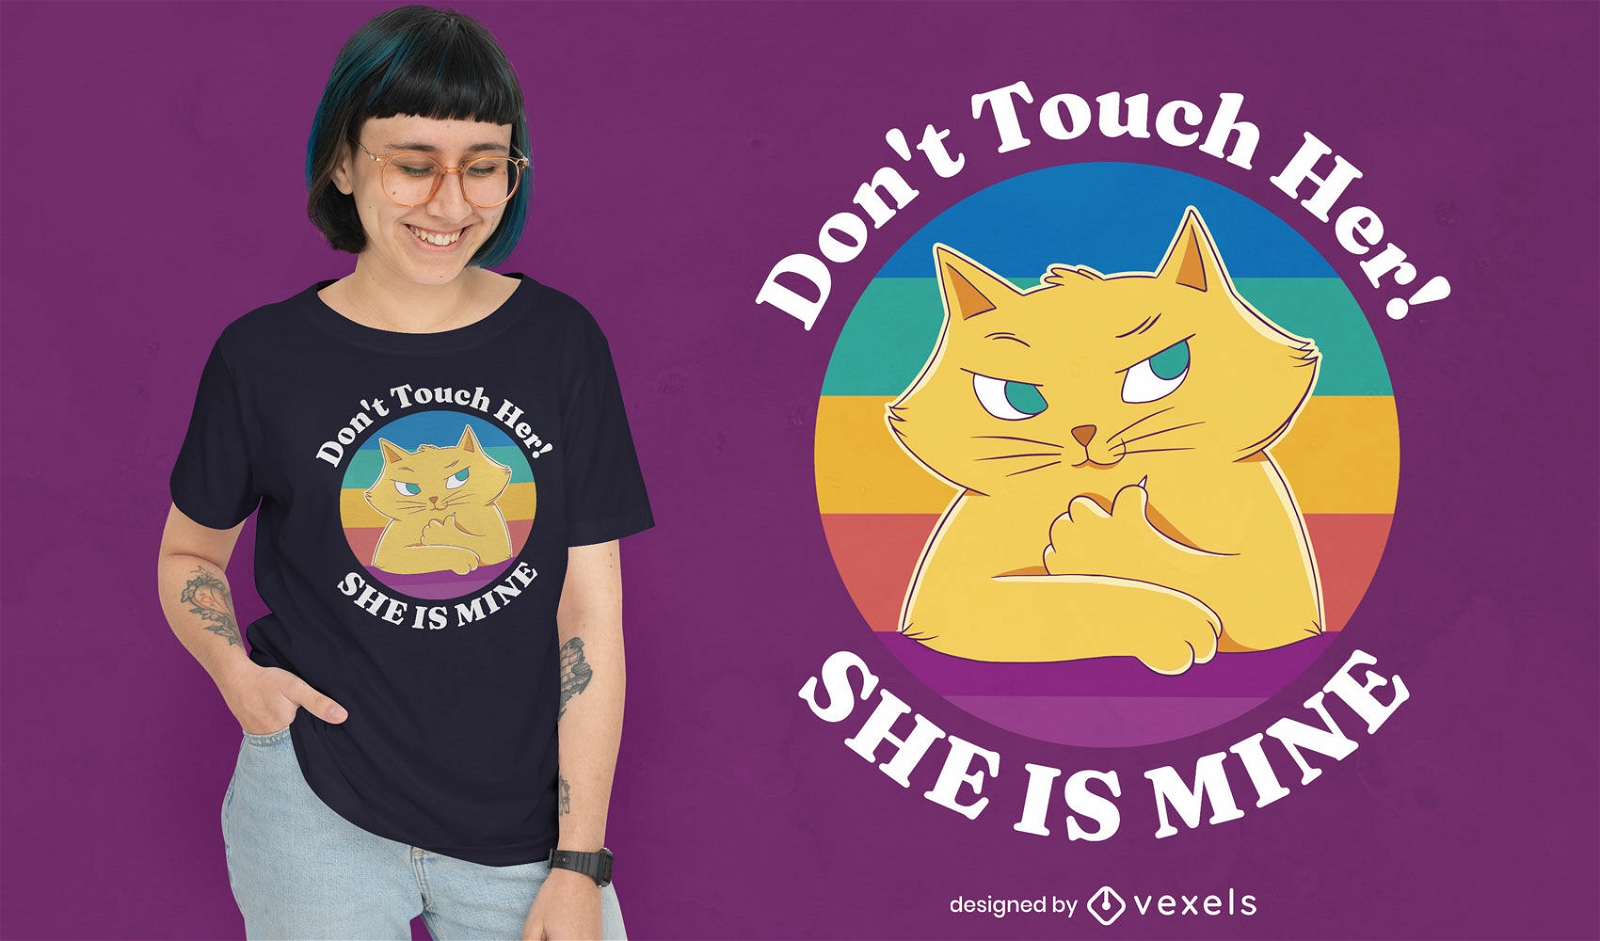 No toques el dise?o de la camiseta de su gato.